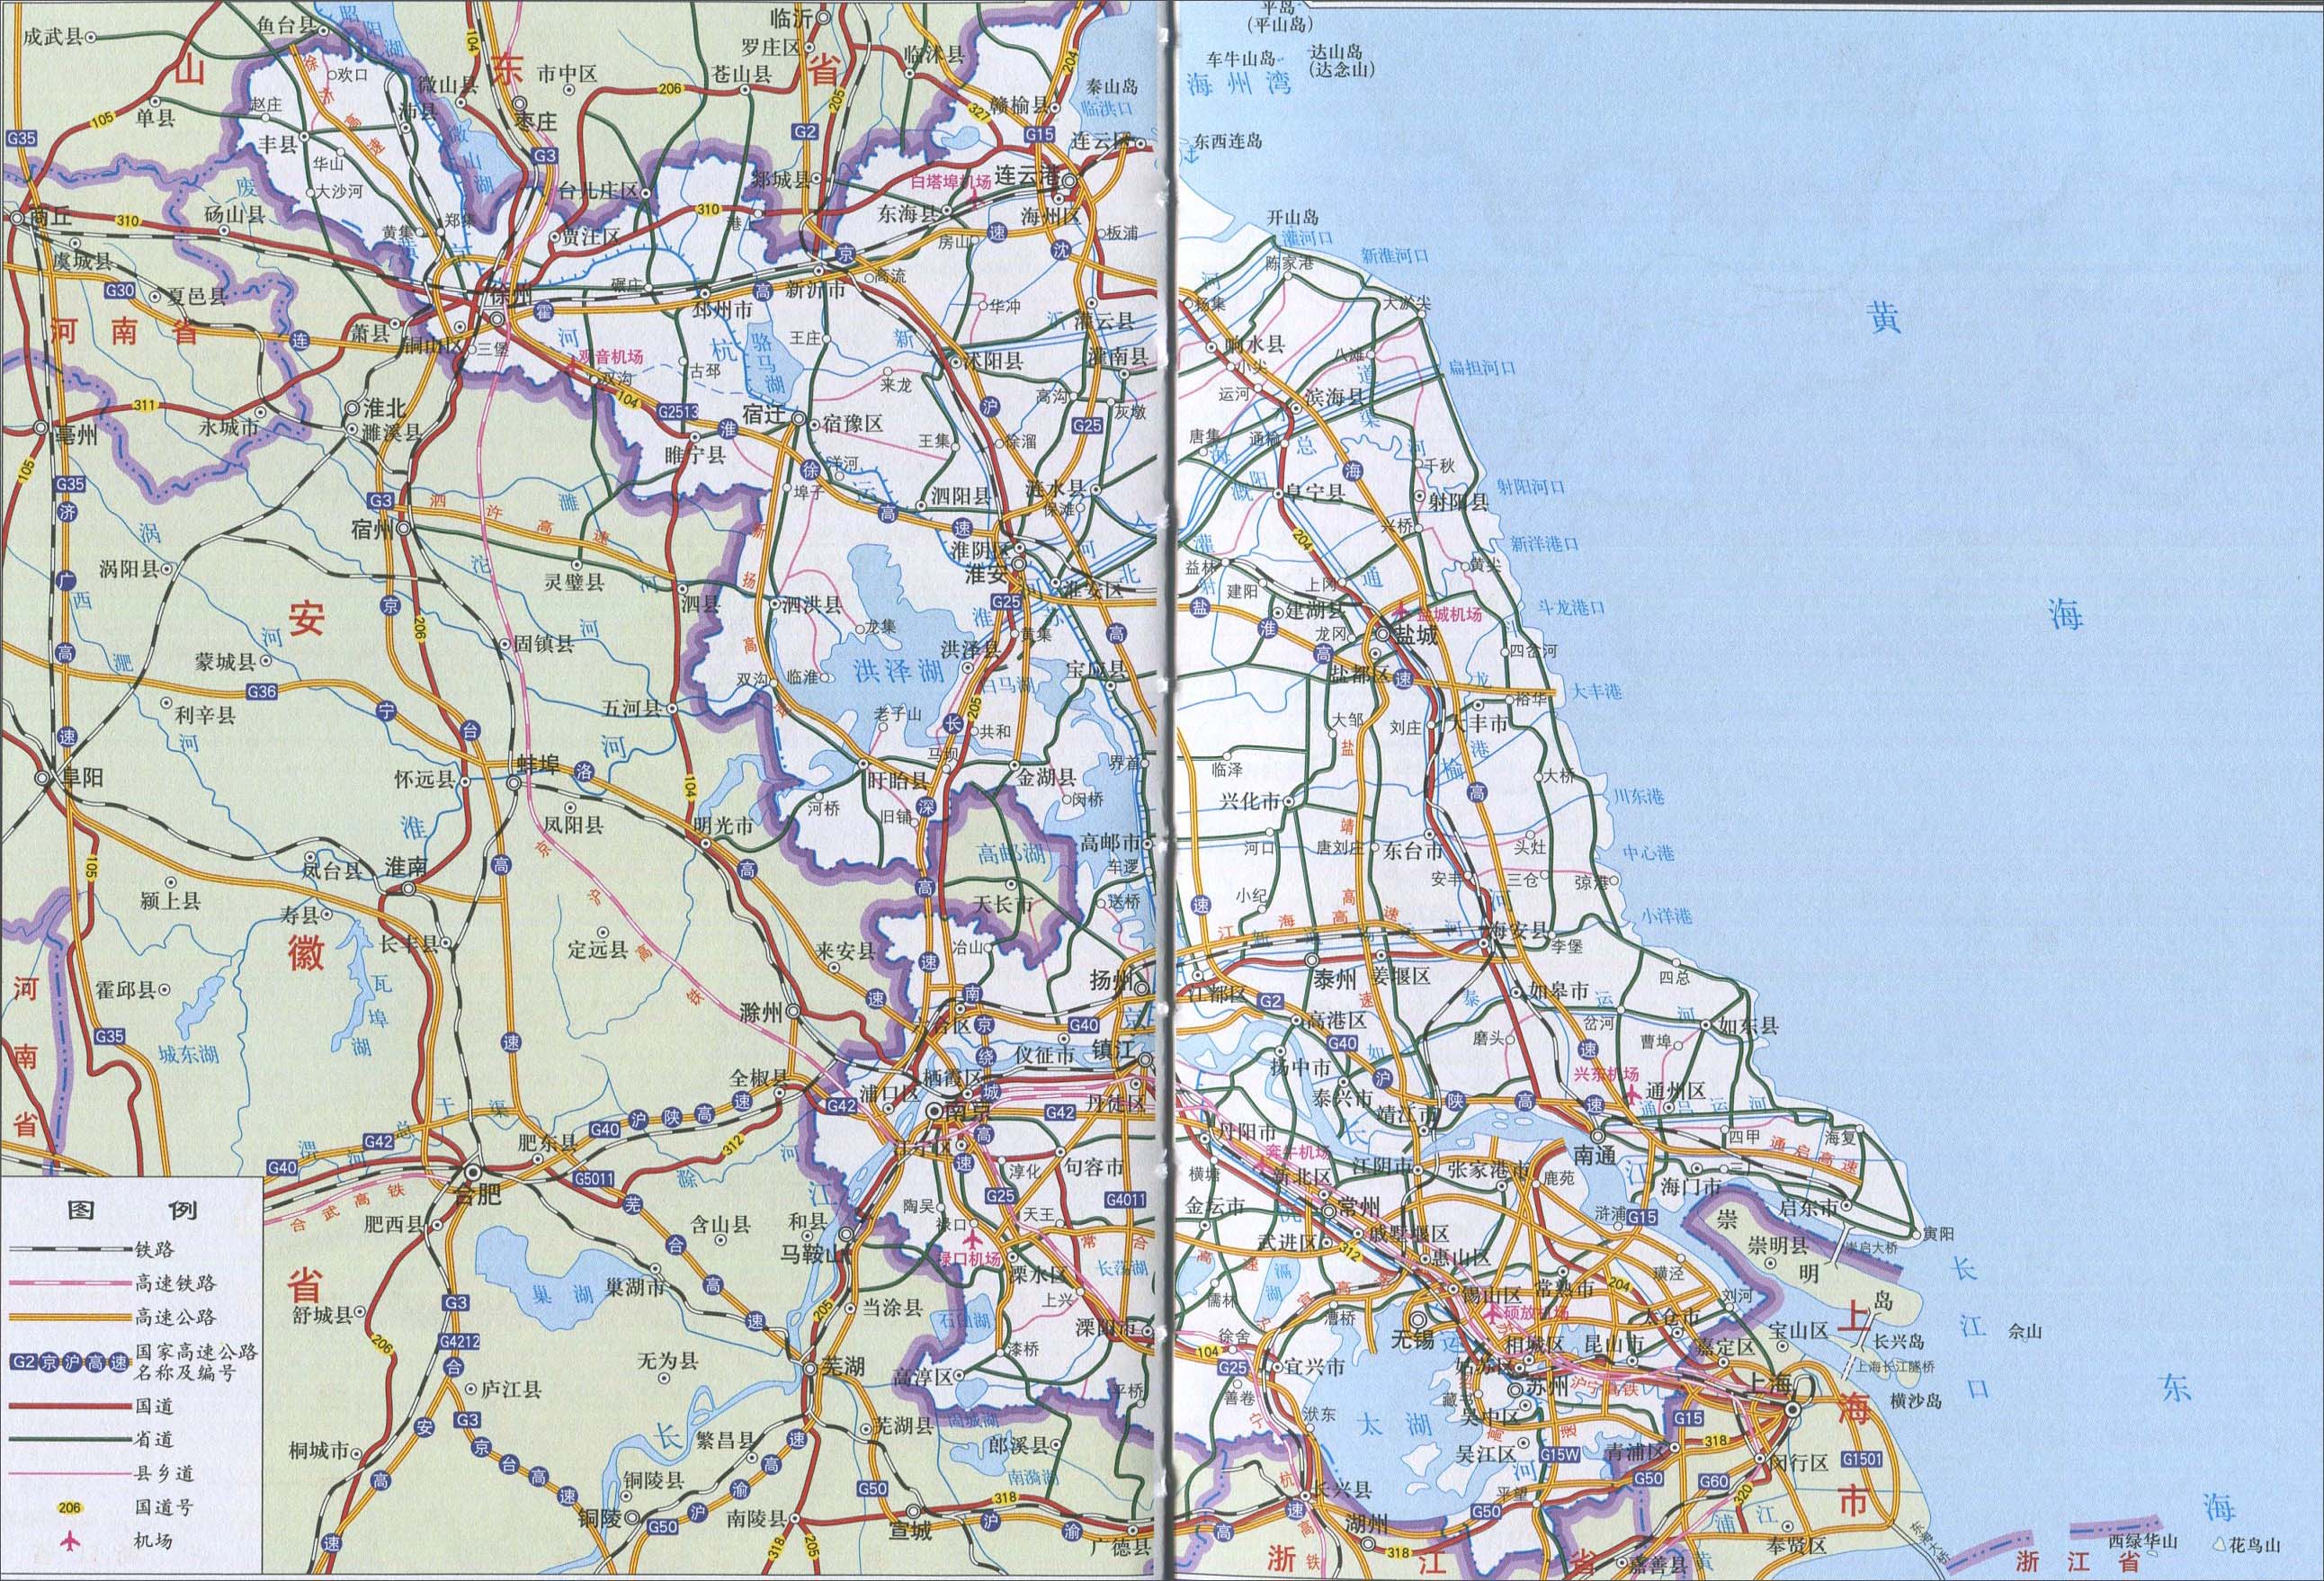 中国地图 江苏 >> 江苏省交通(铁路,公路)图  分类: 江苏  更新:2014图片